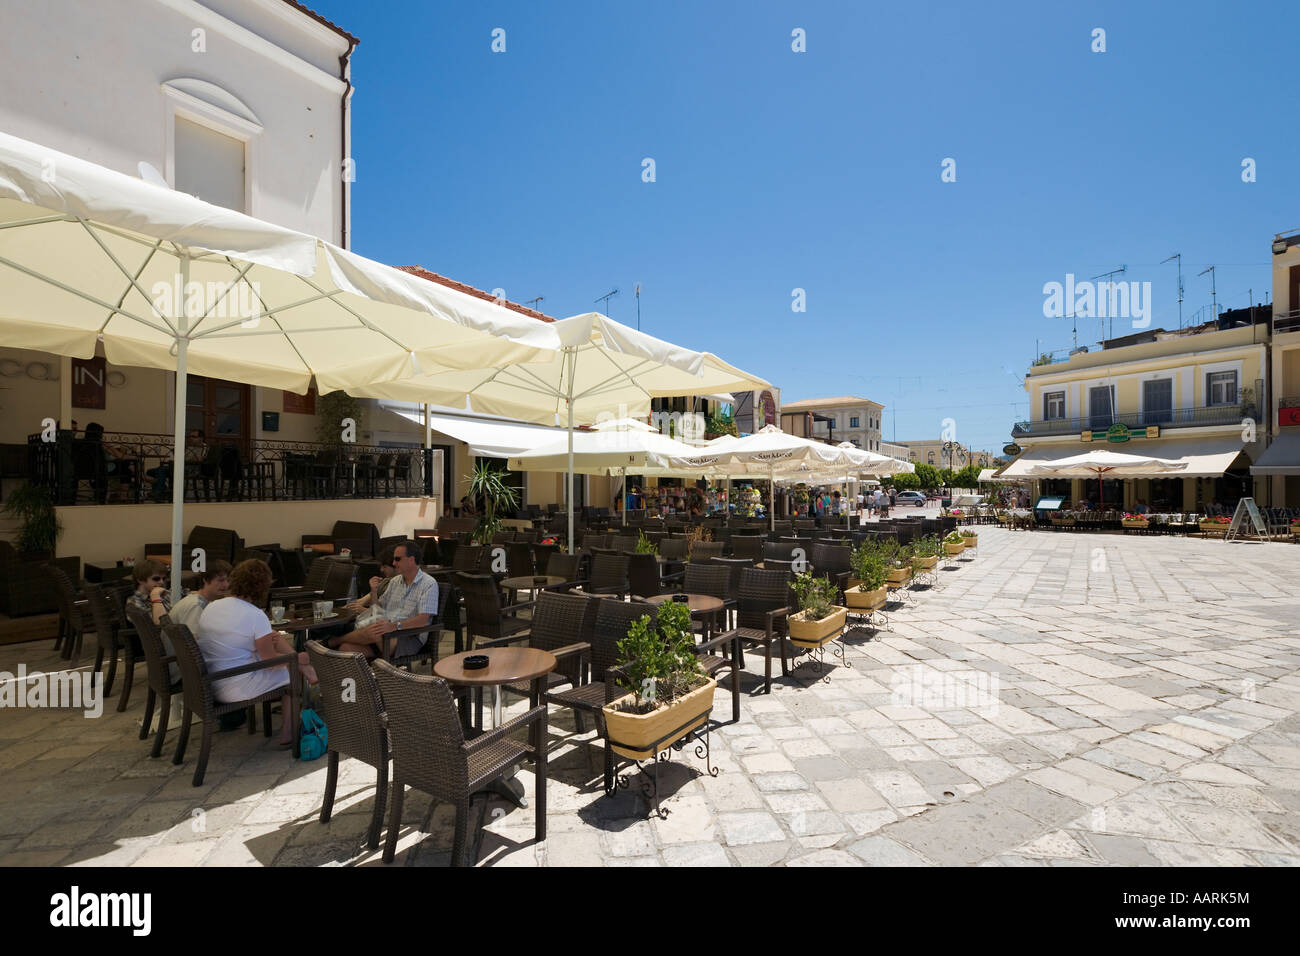 Restaurants sur la Place Saint Marc, la Place St Marc (Agios Markou Sq), la ville de Zakynthos, Zante, îles Ioniennes, Grèce Banque D'Images